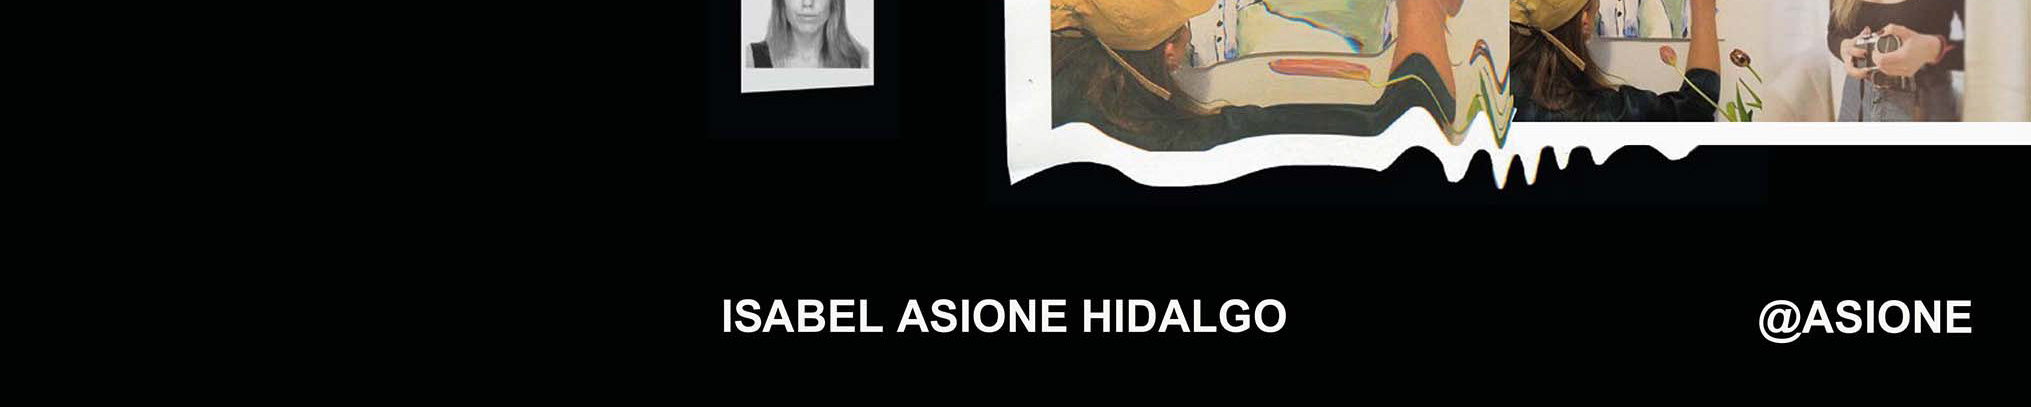 Isabel asione Hidalgo 的个人资料横幅